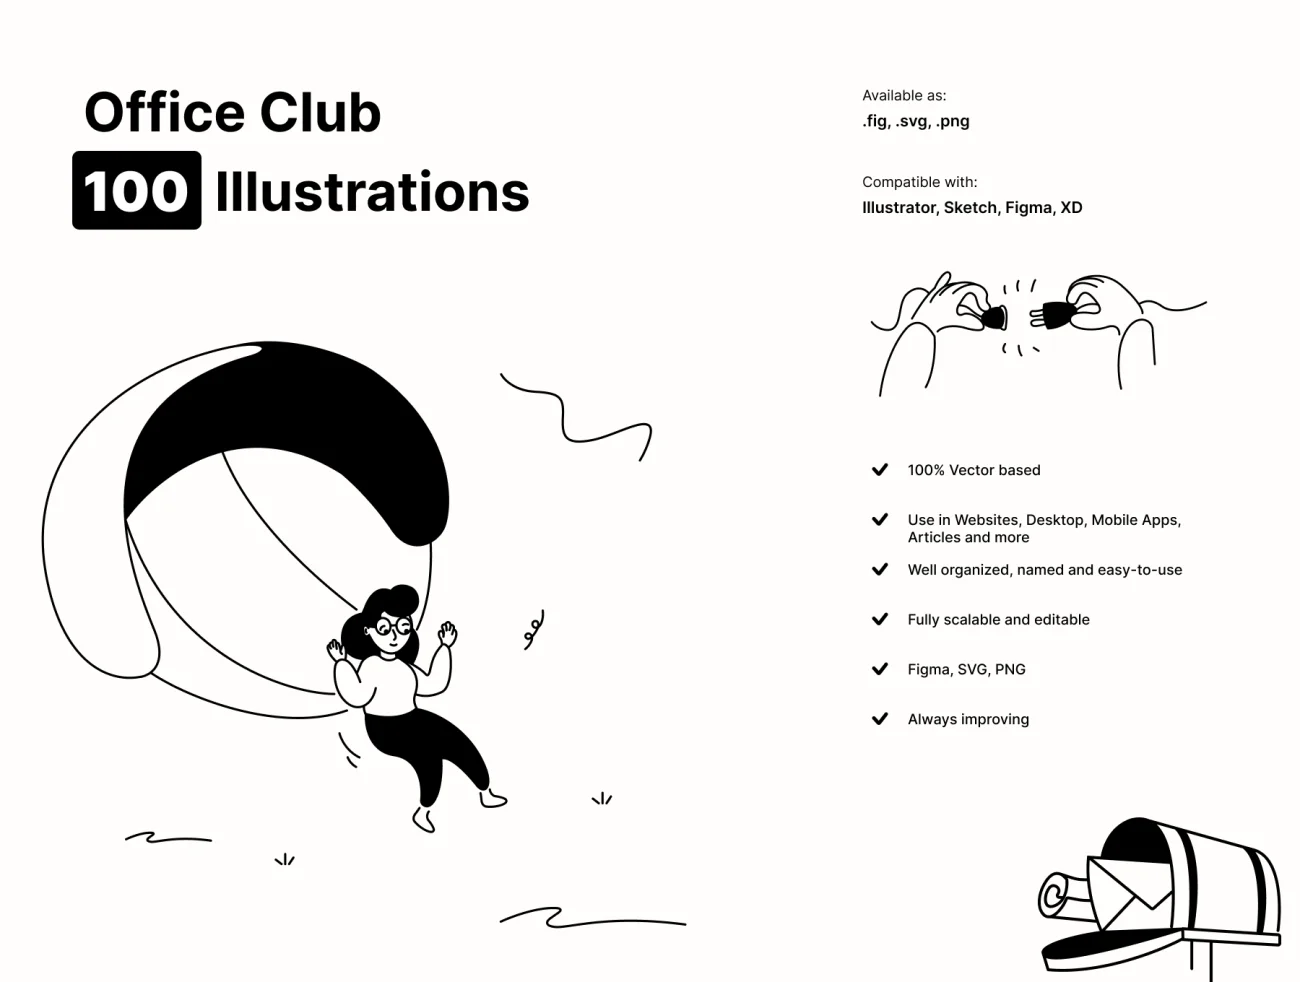 办公场景漫画风格艺术插图 Office Club Illustration pack-人物插画、商业金融、场景插画、学习生活、插画、插画功能、插画风格、数据演示、概念创意、电子商务、线条手绘、职场办公、趣味漫画-到位啦UI